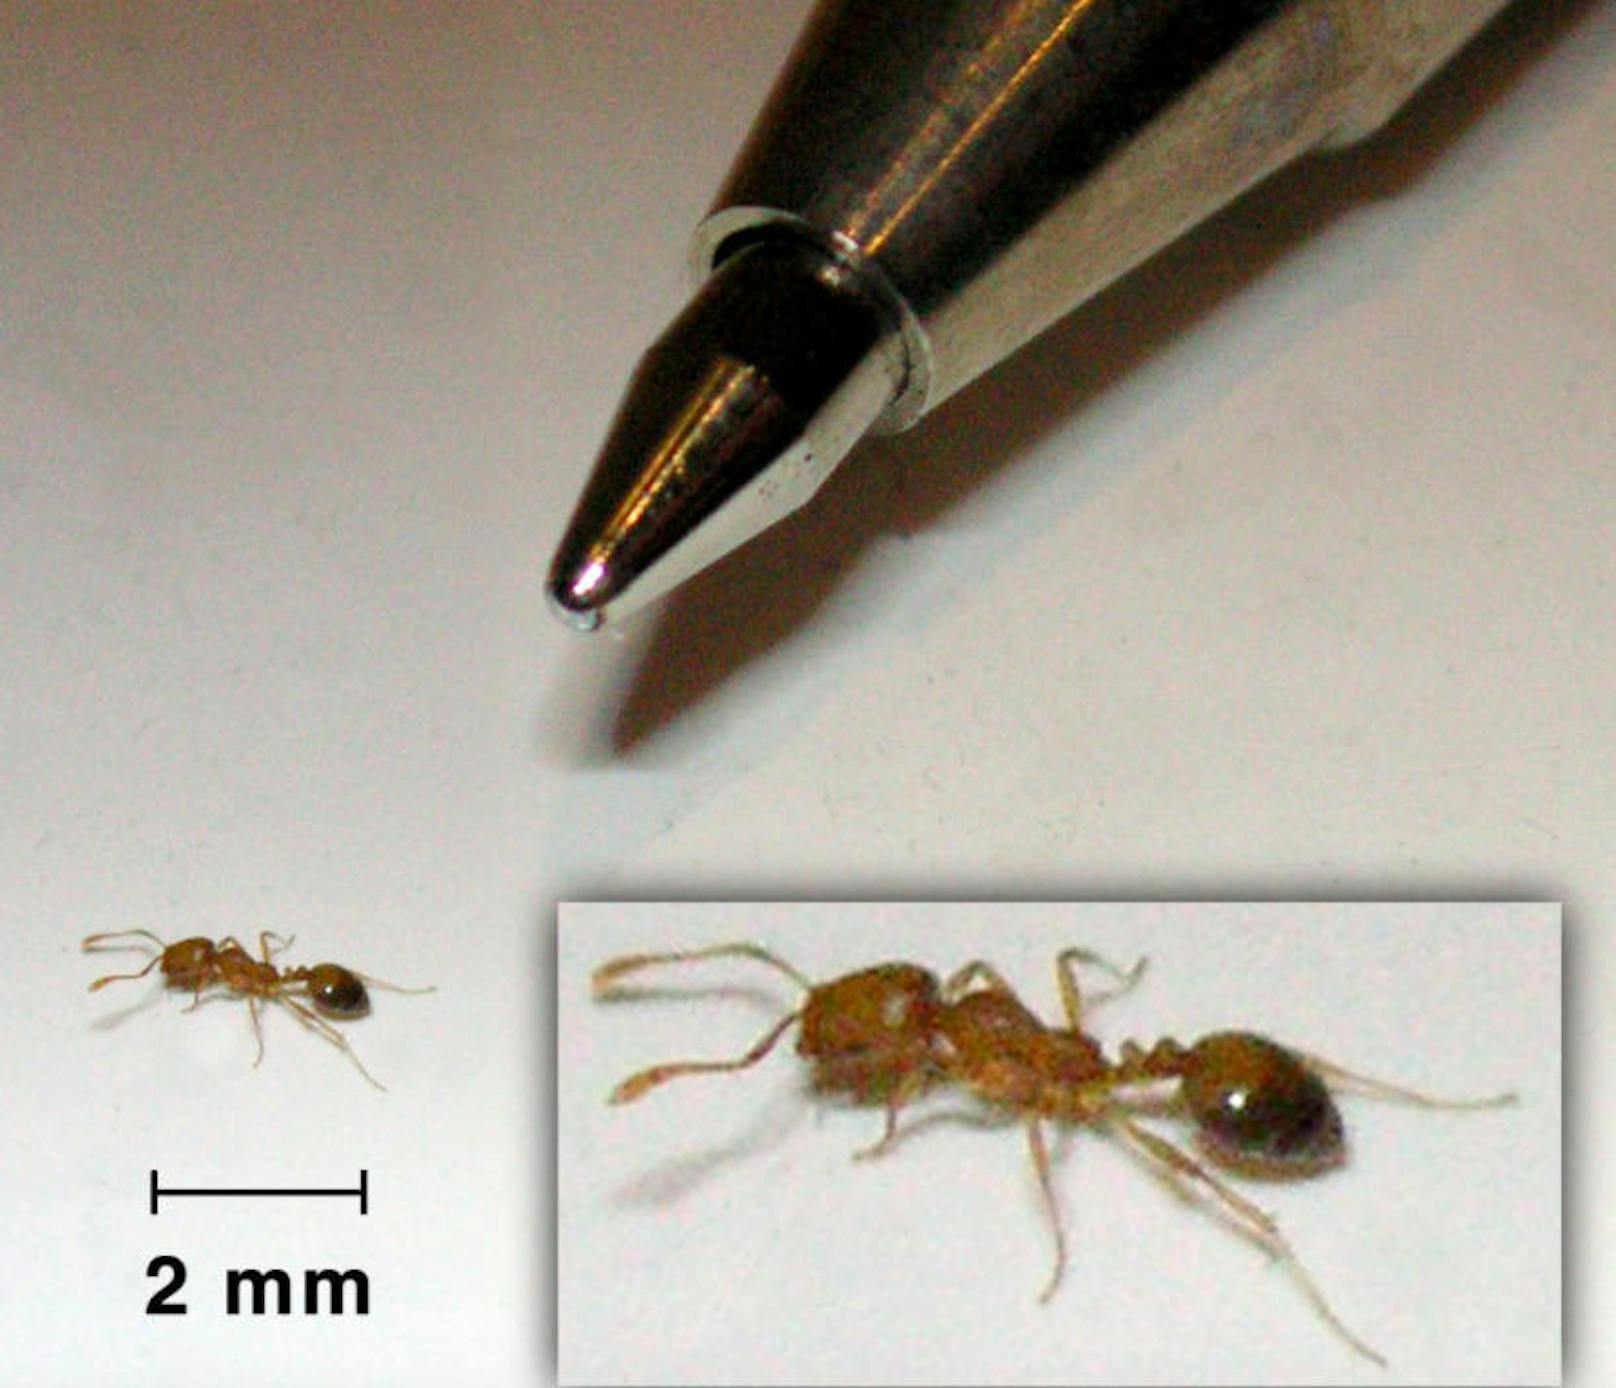 <b>Pharaoameisen</b>
Da diese Ameise meldepflichtige Krankheiten übertragen kann, muss man unbedingt eine Schädlingsbekämpfungsfirma mit viel Erfahrung kommen lassen.